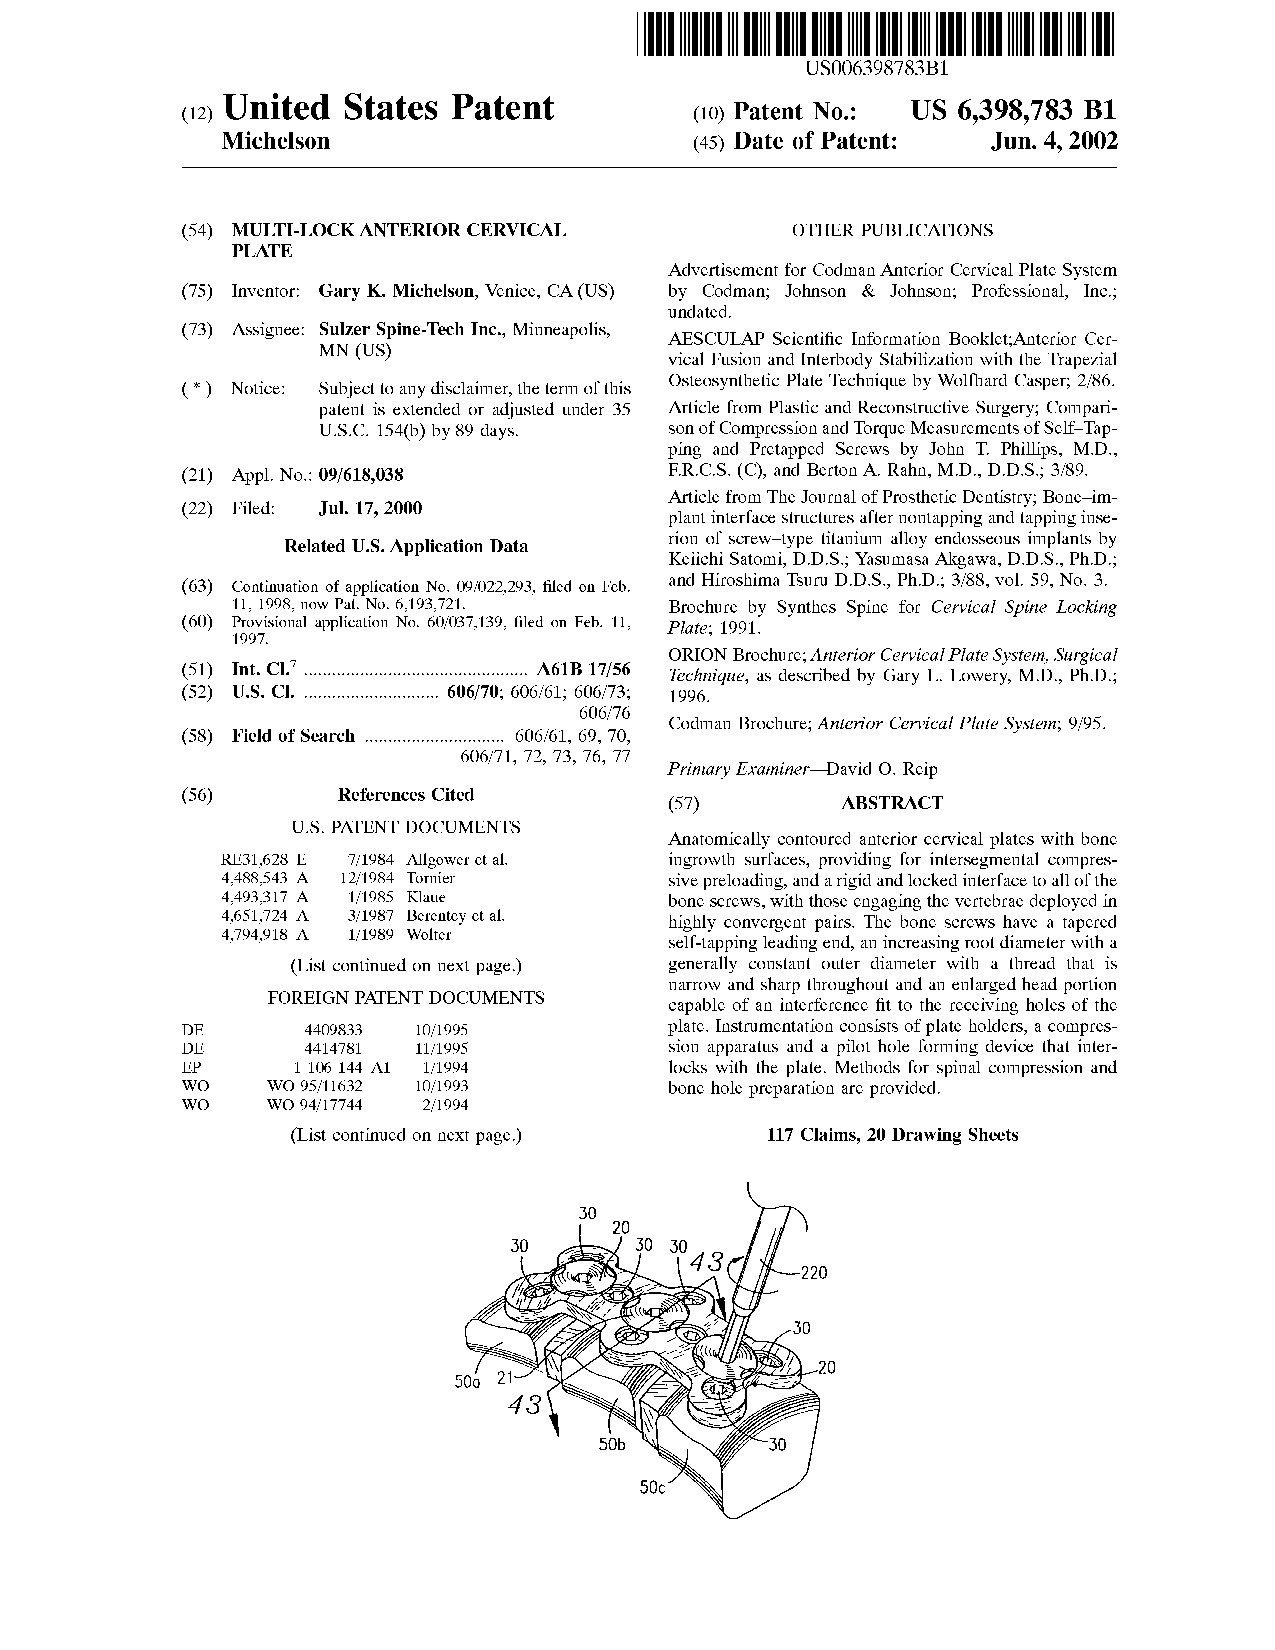 Multi-lock anterior cervical plate - Patent 6,398,783